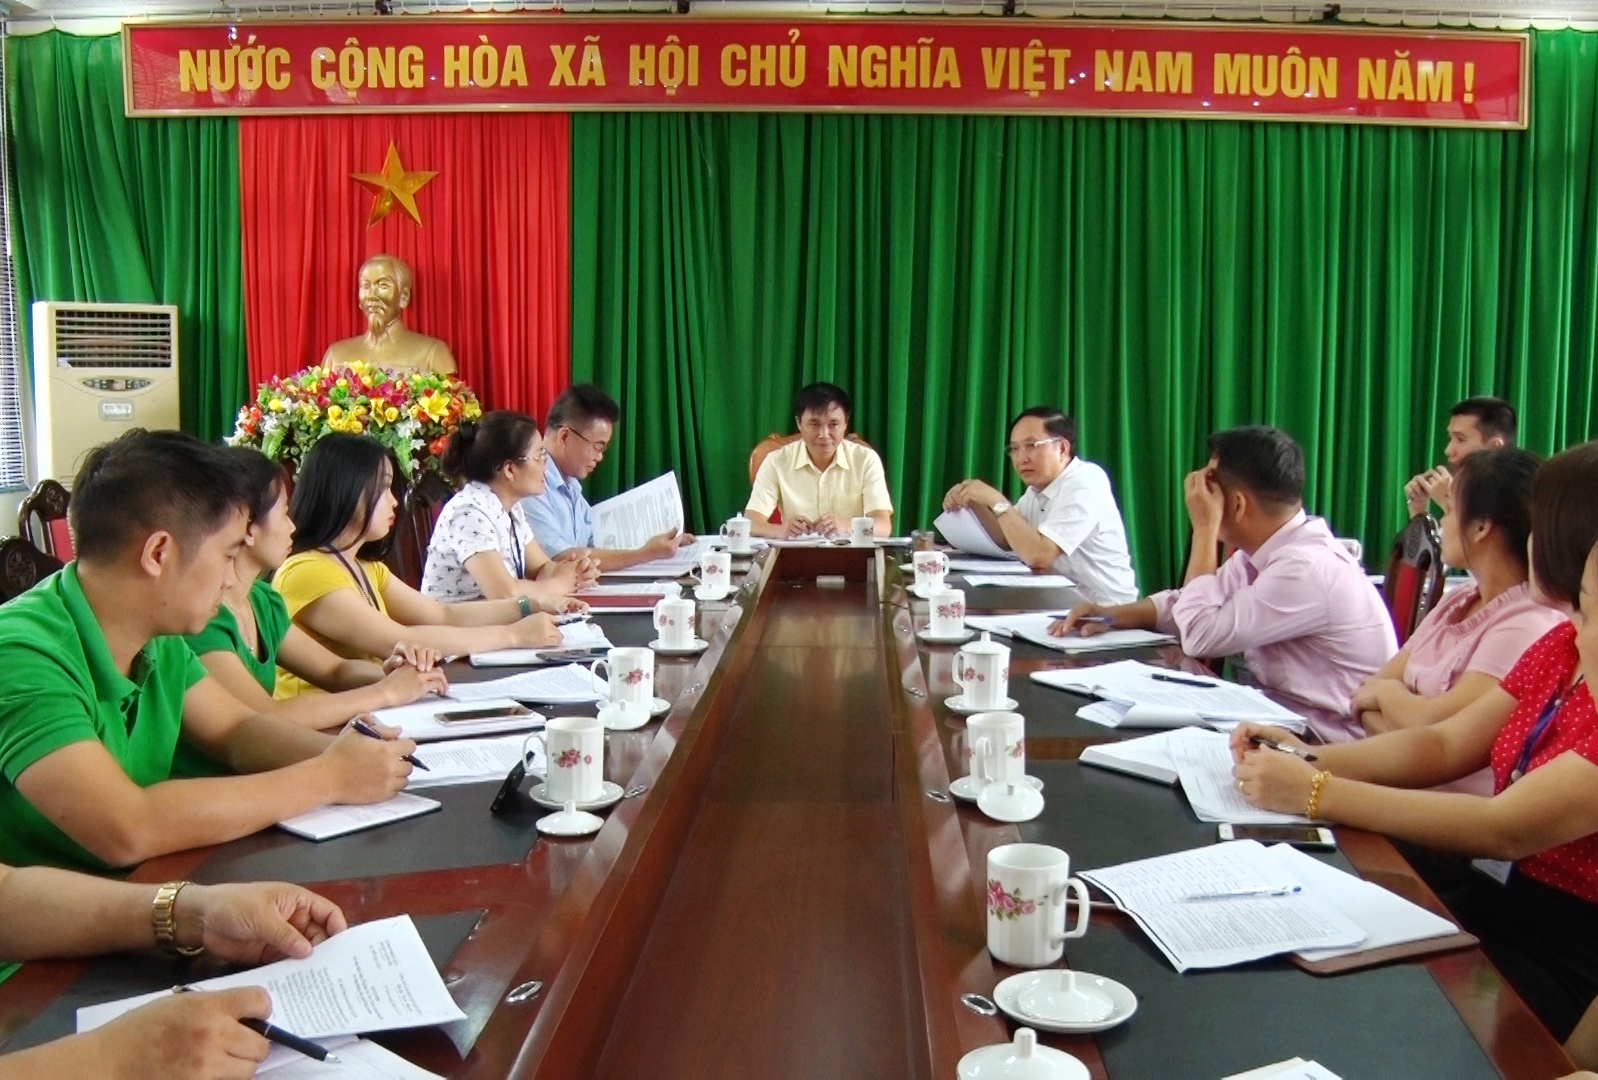 Vị Xuyên họp Ban chỉ đạo cải cách hành chính và ứng dụng công nghệ thông tin